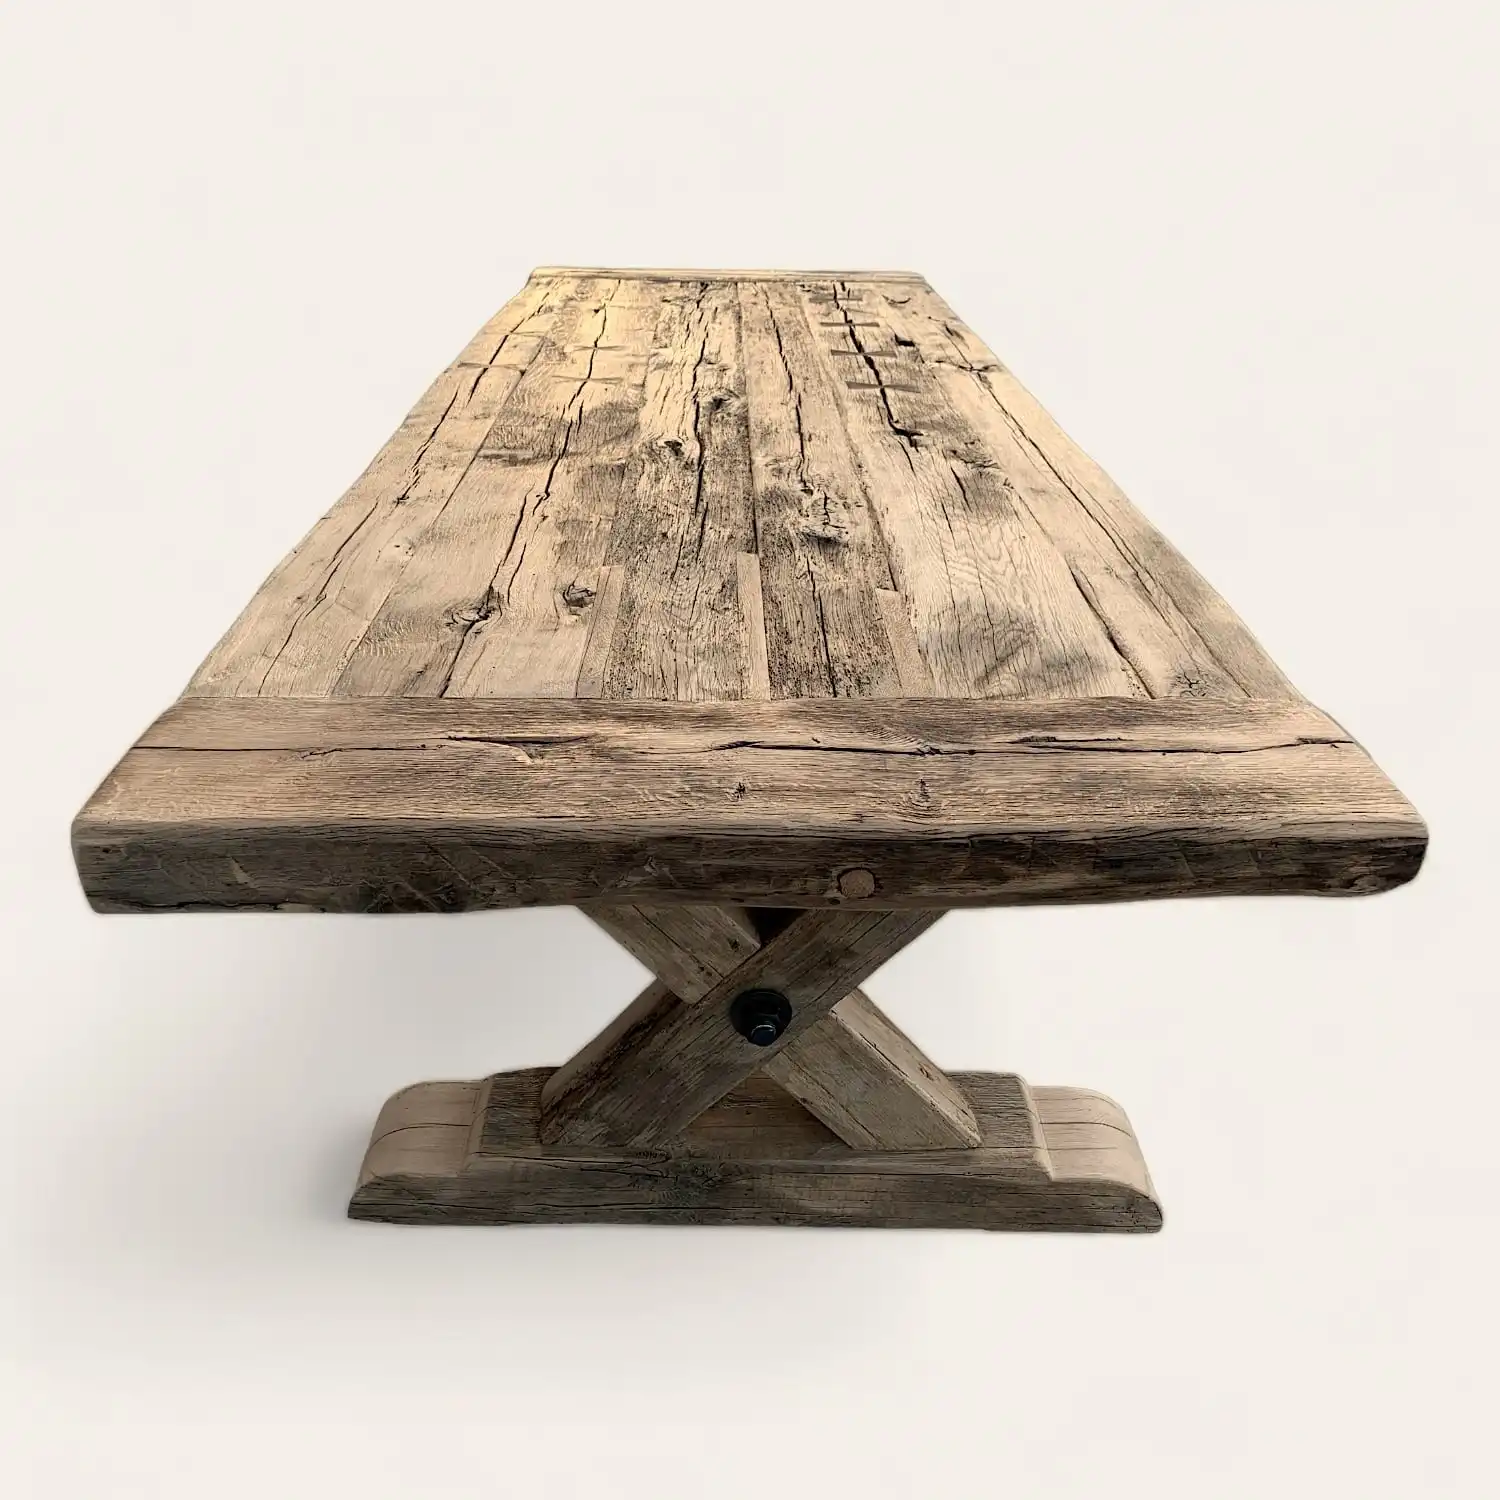  Une table en bois rustique style fermette pour extérieur avec un fond blanc. 